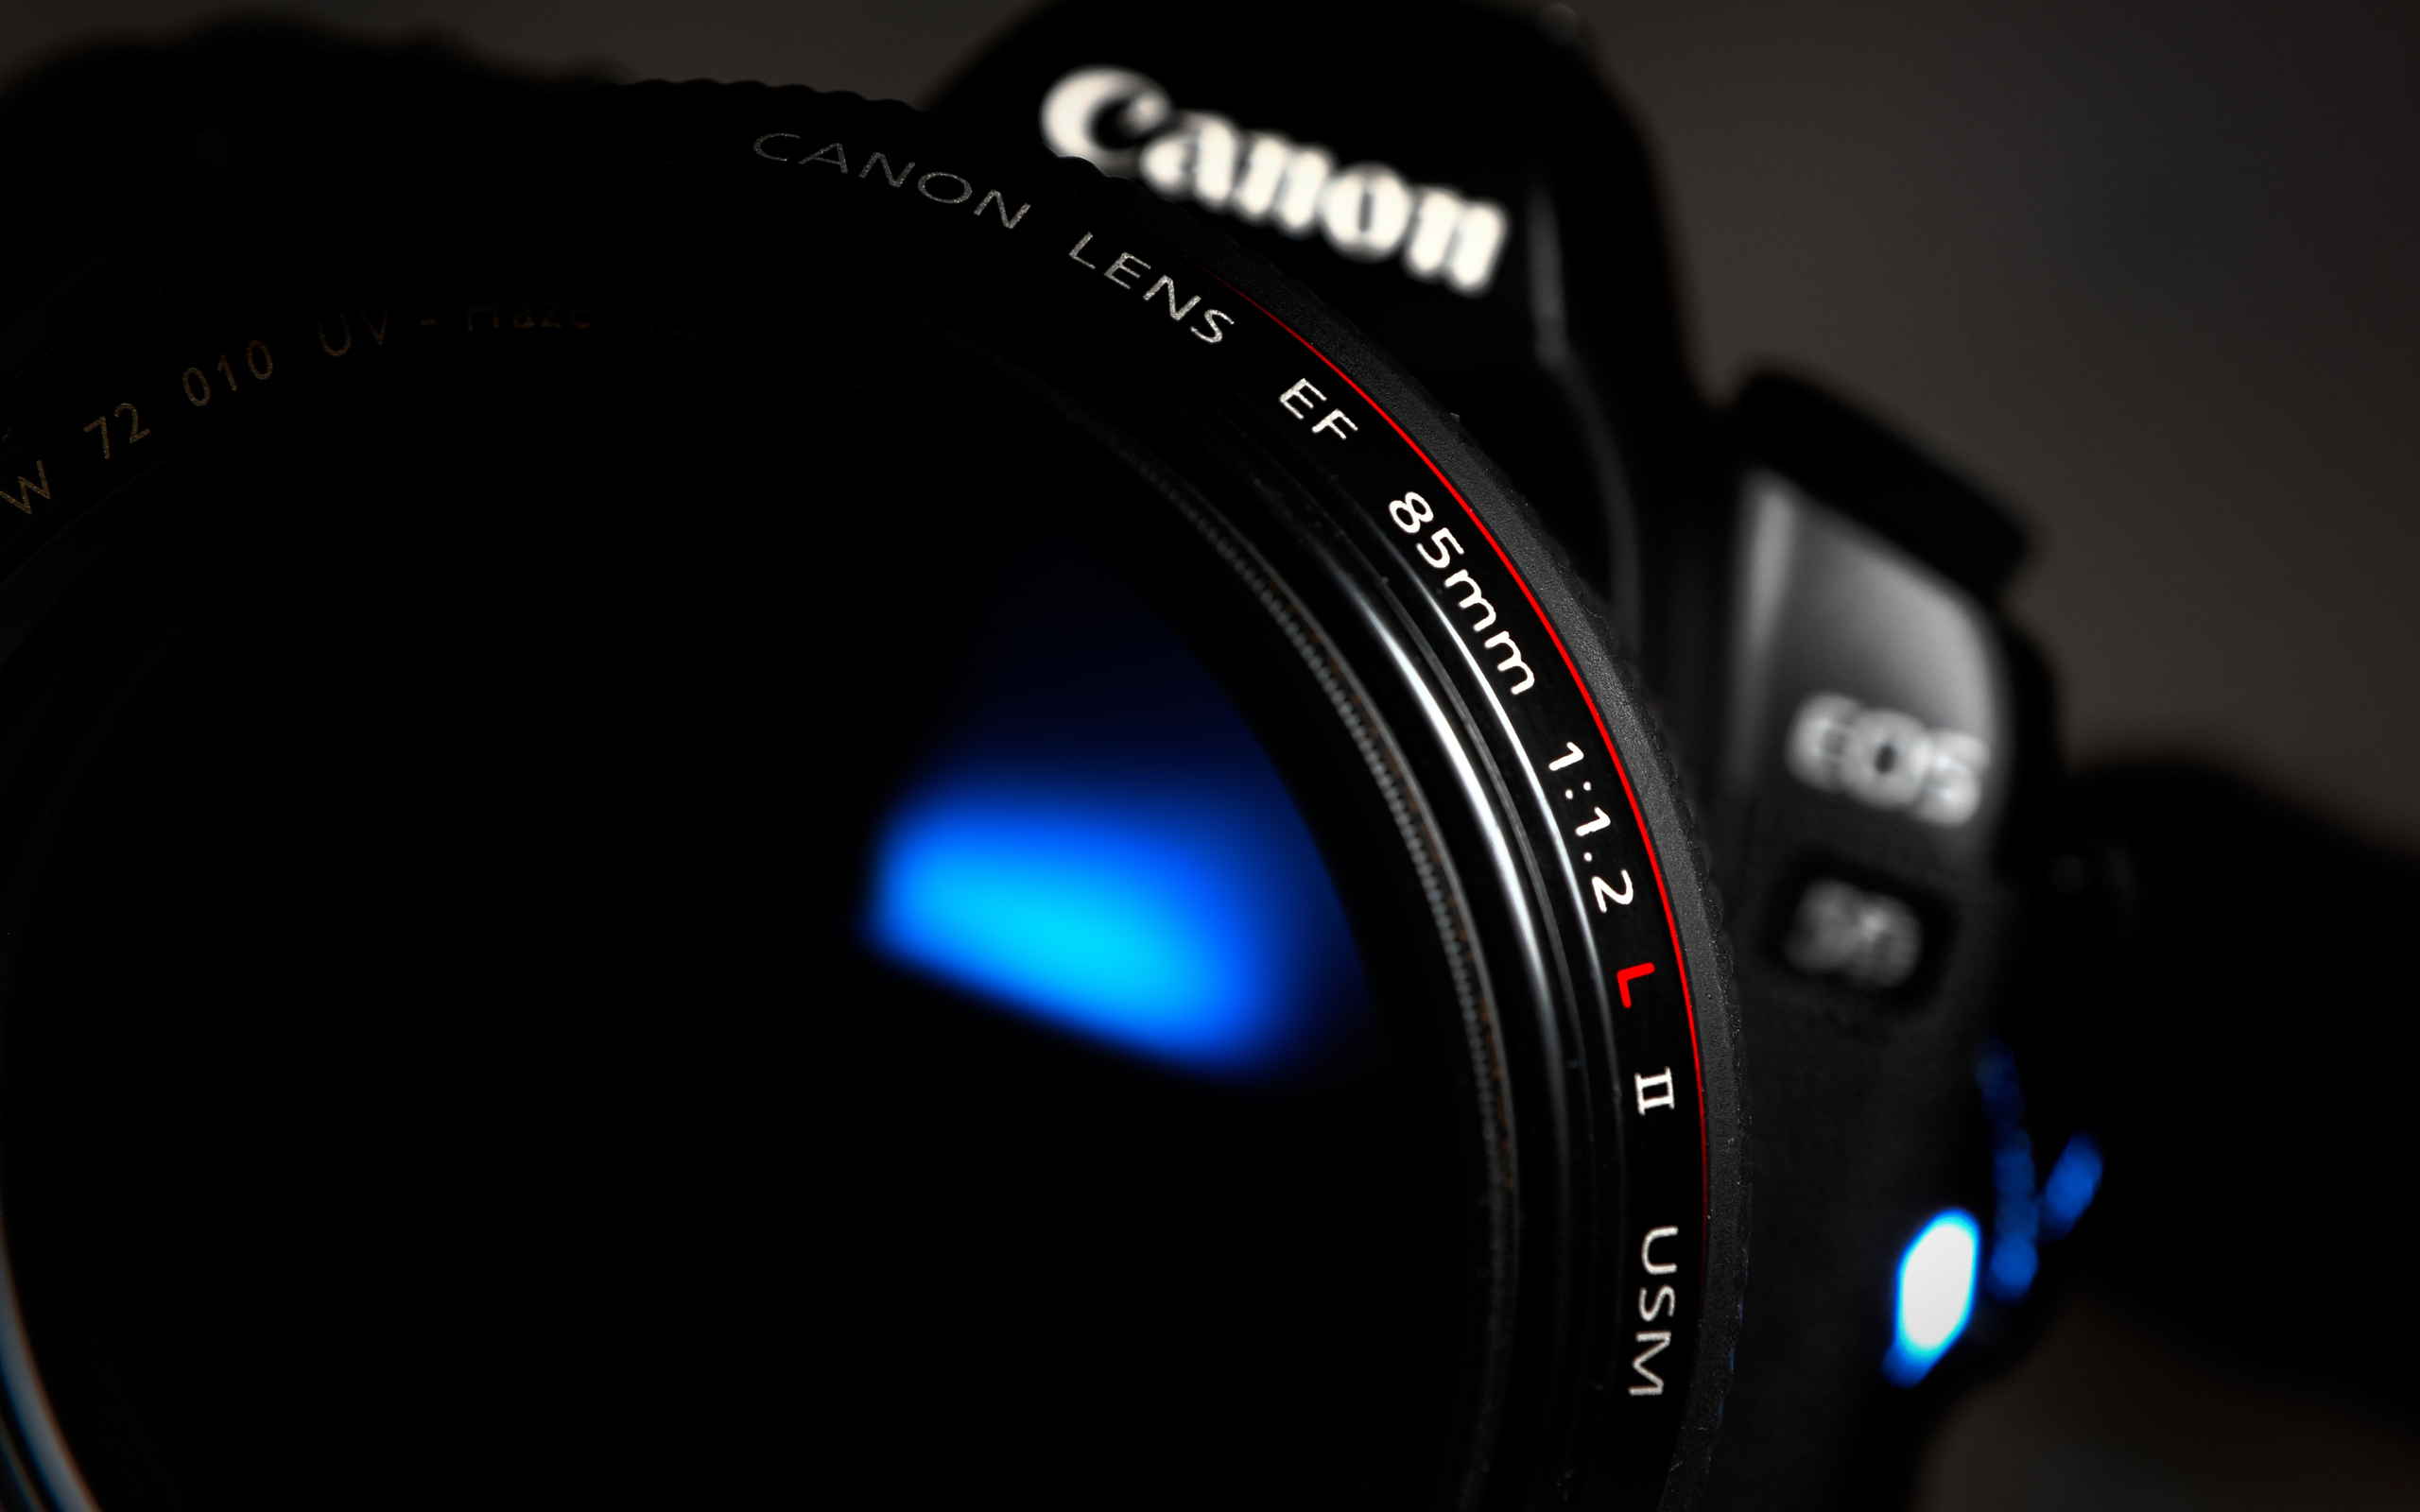 canon camera